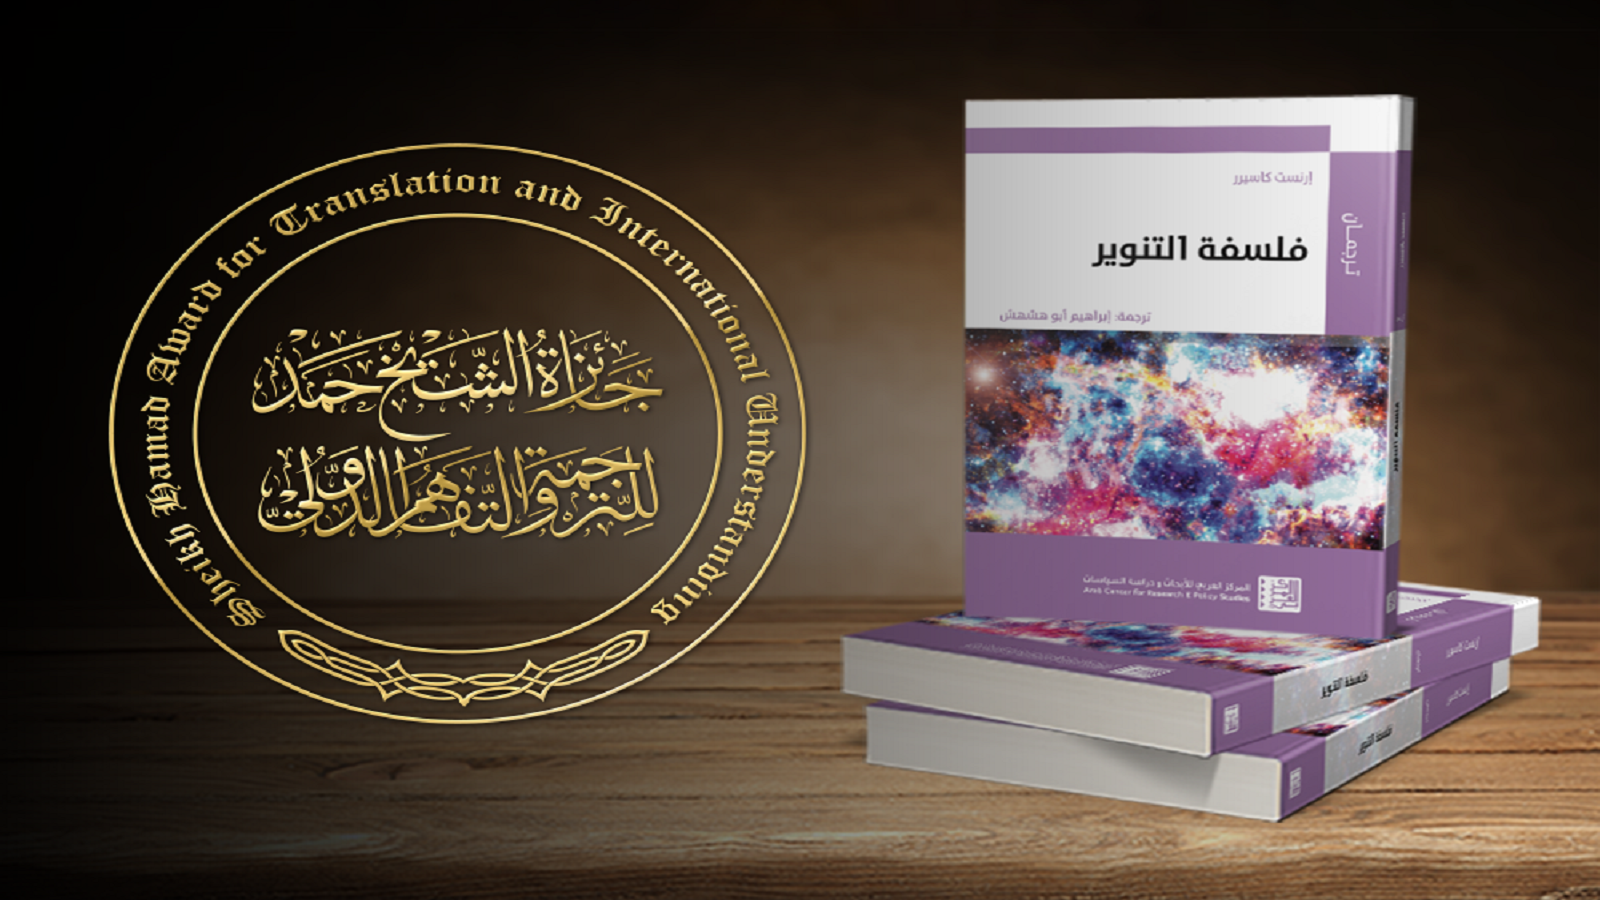 "فلسفة التنوير" يفوز بجائزة الشيخ حمد للترجمة